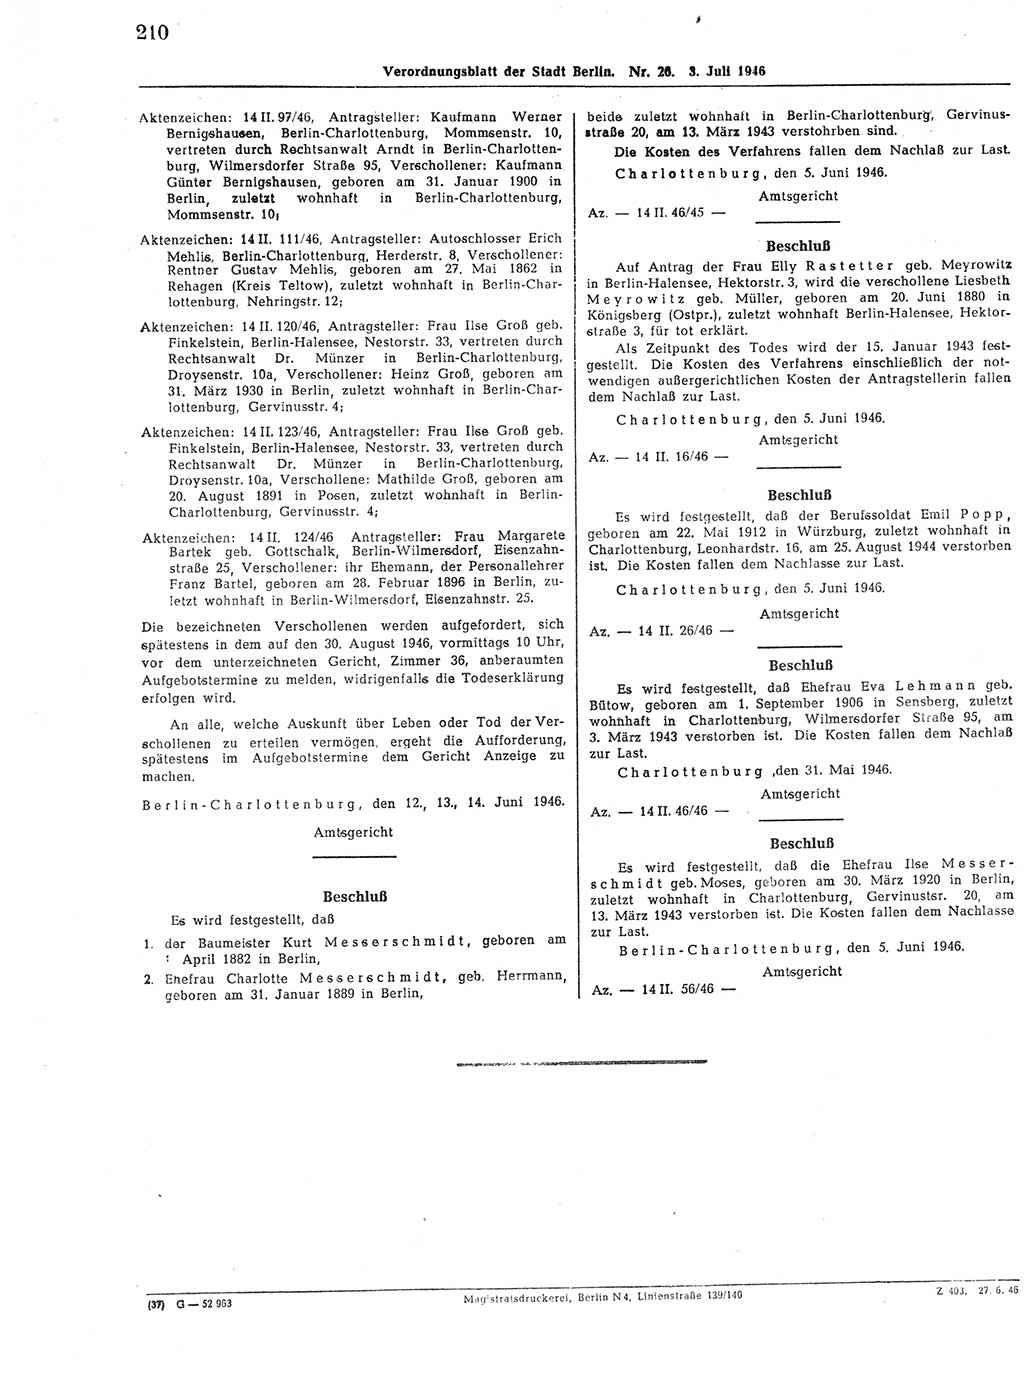 Verordnungsblatt (VOBl.) der Stadt Berlin, für Groß-Berlin 1946, Seite 210 (VOBl. Bln. 1946, S. 210)